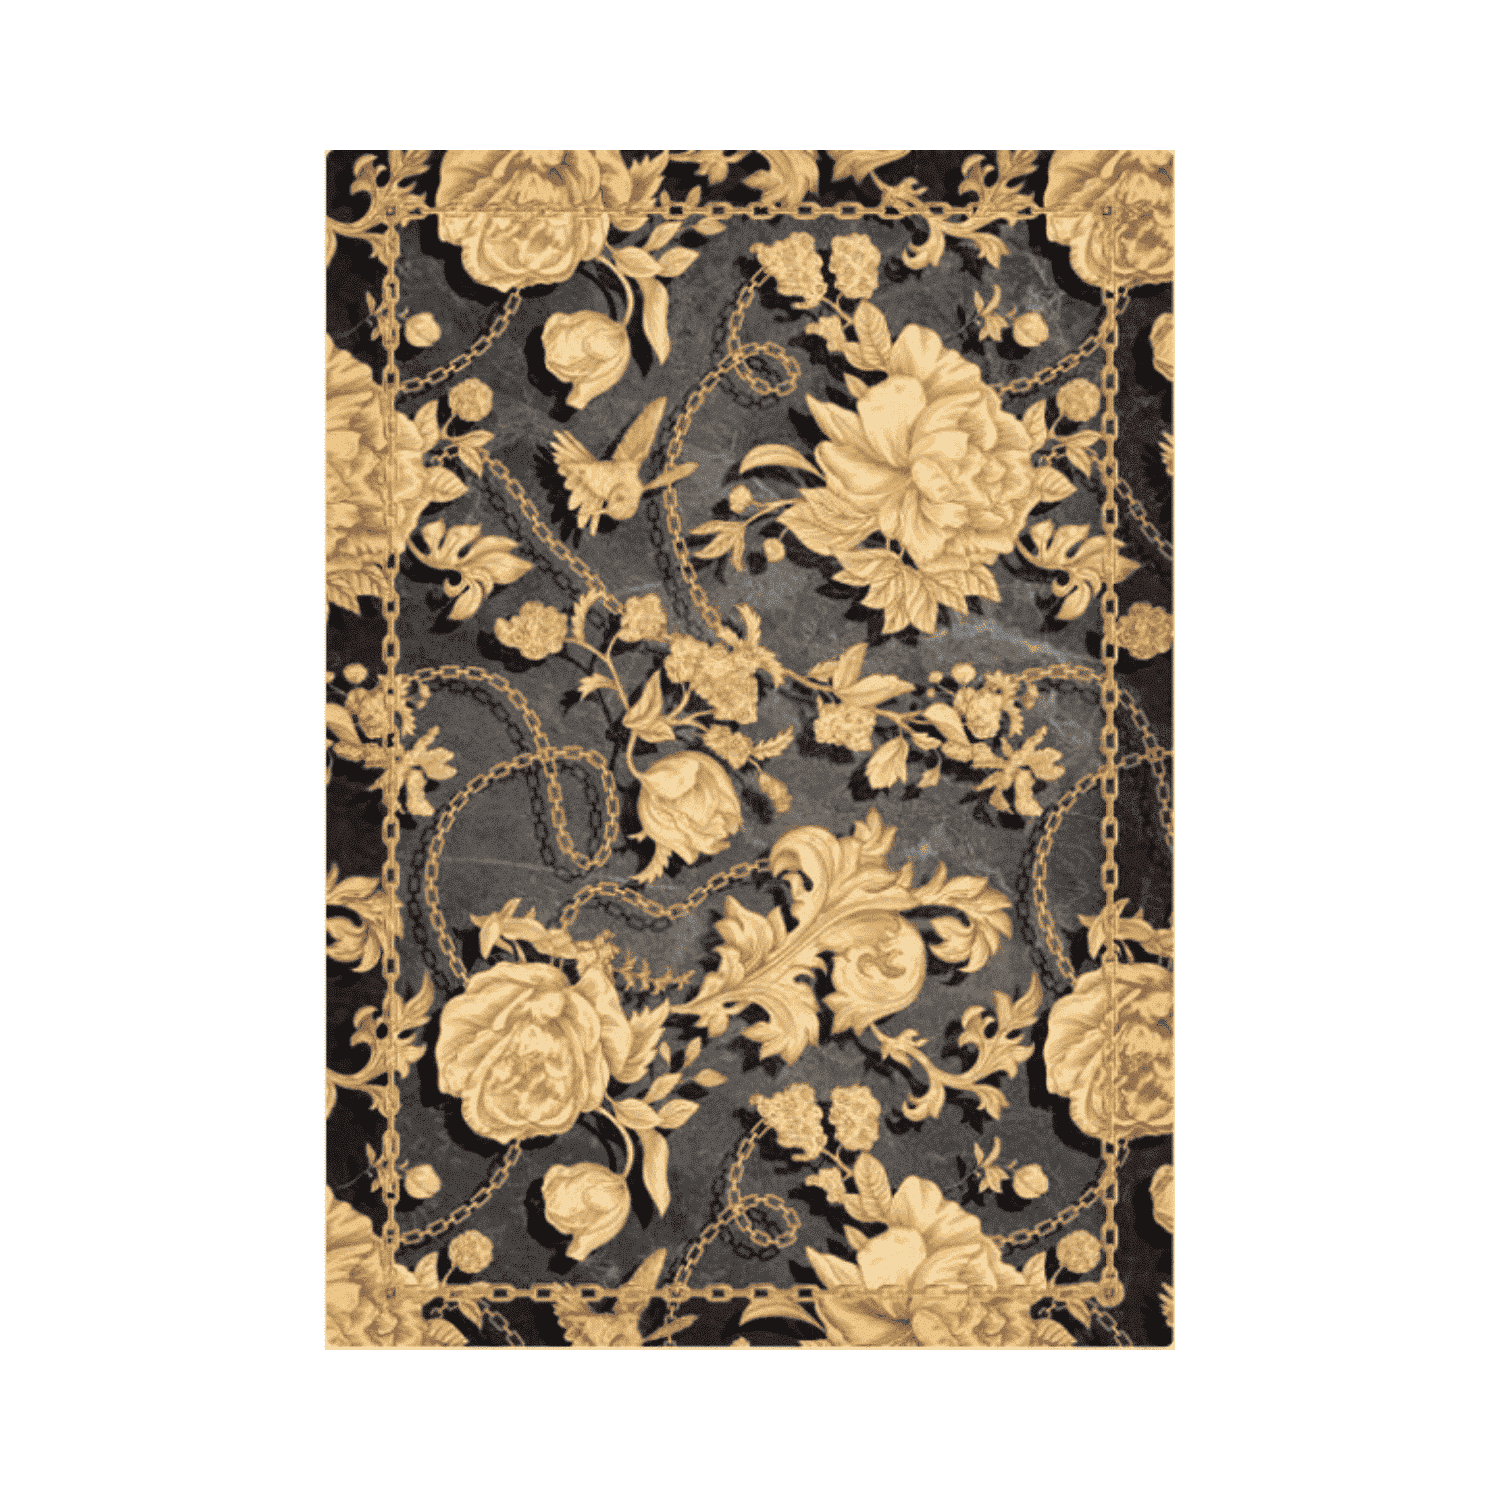 versailles-tappeto-arredo-emozioni-artista-oro-nero-antracite-luxury-lusso-moderno-front